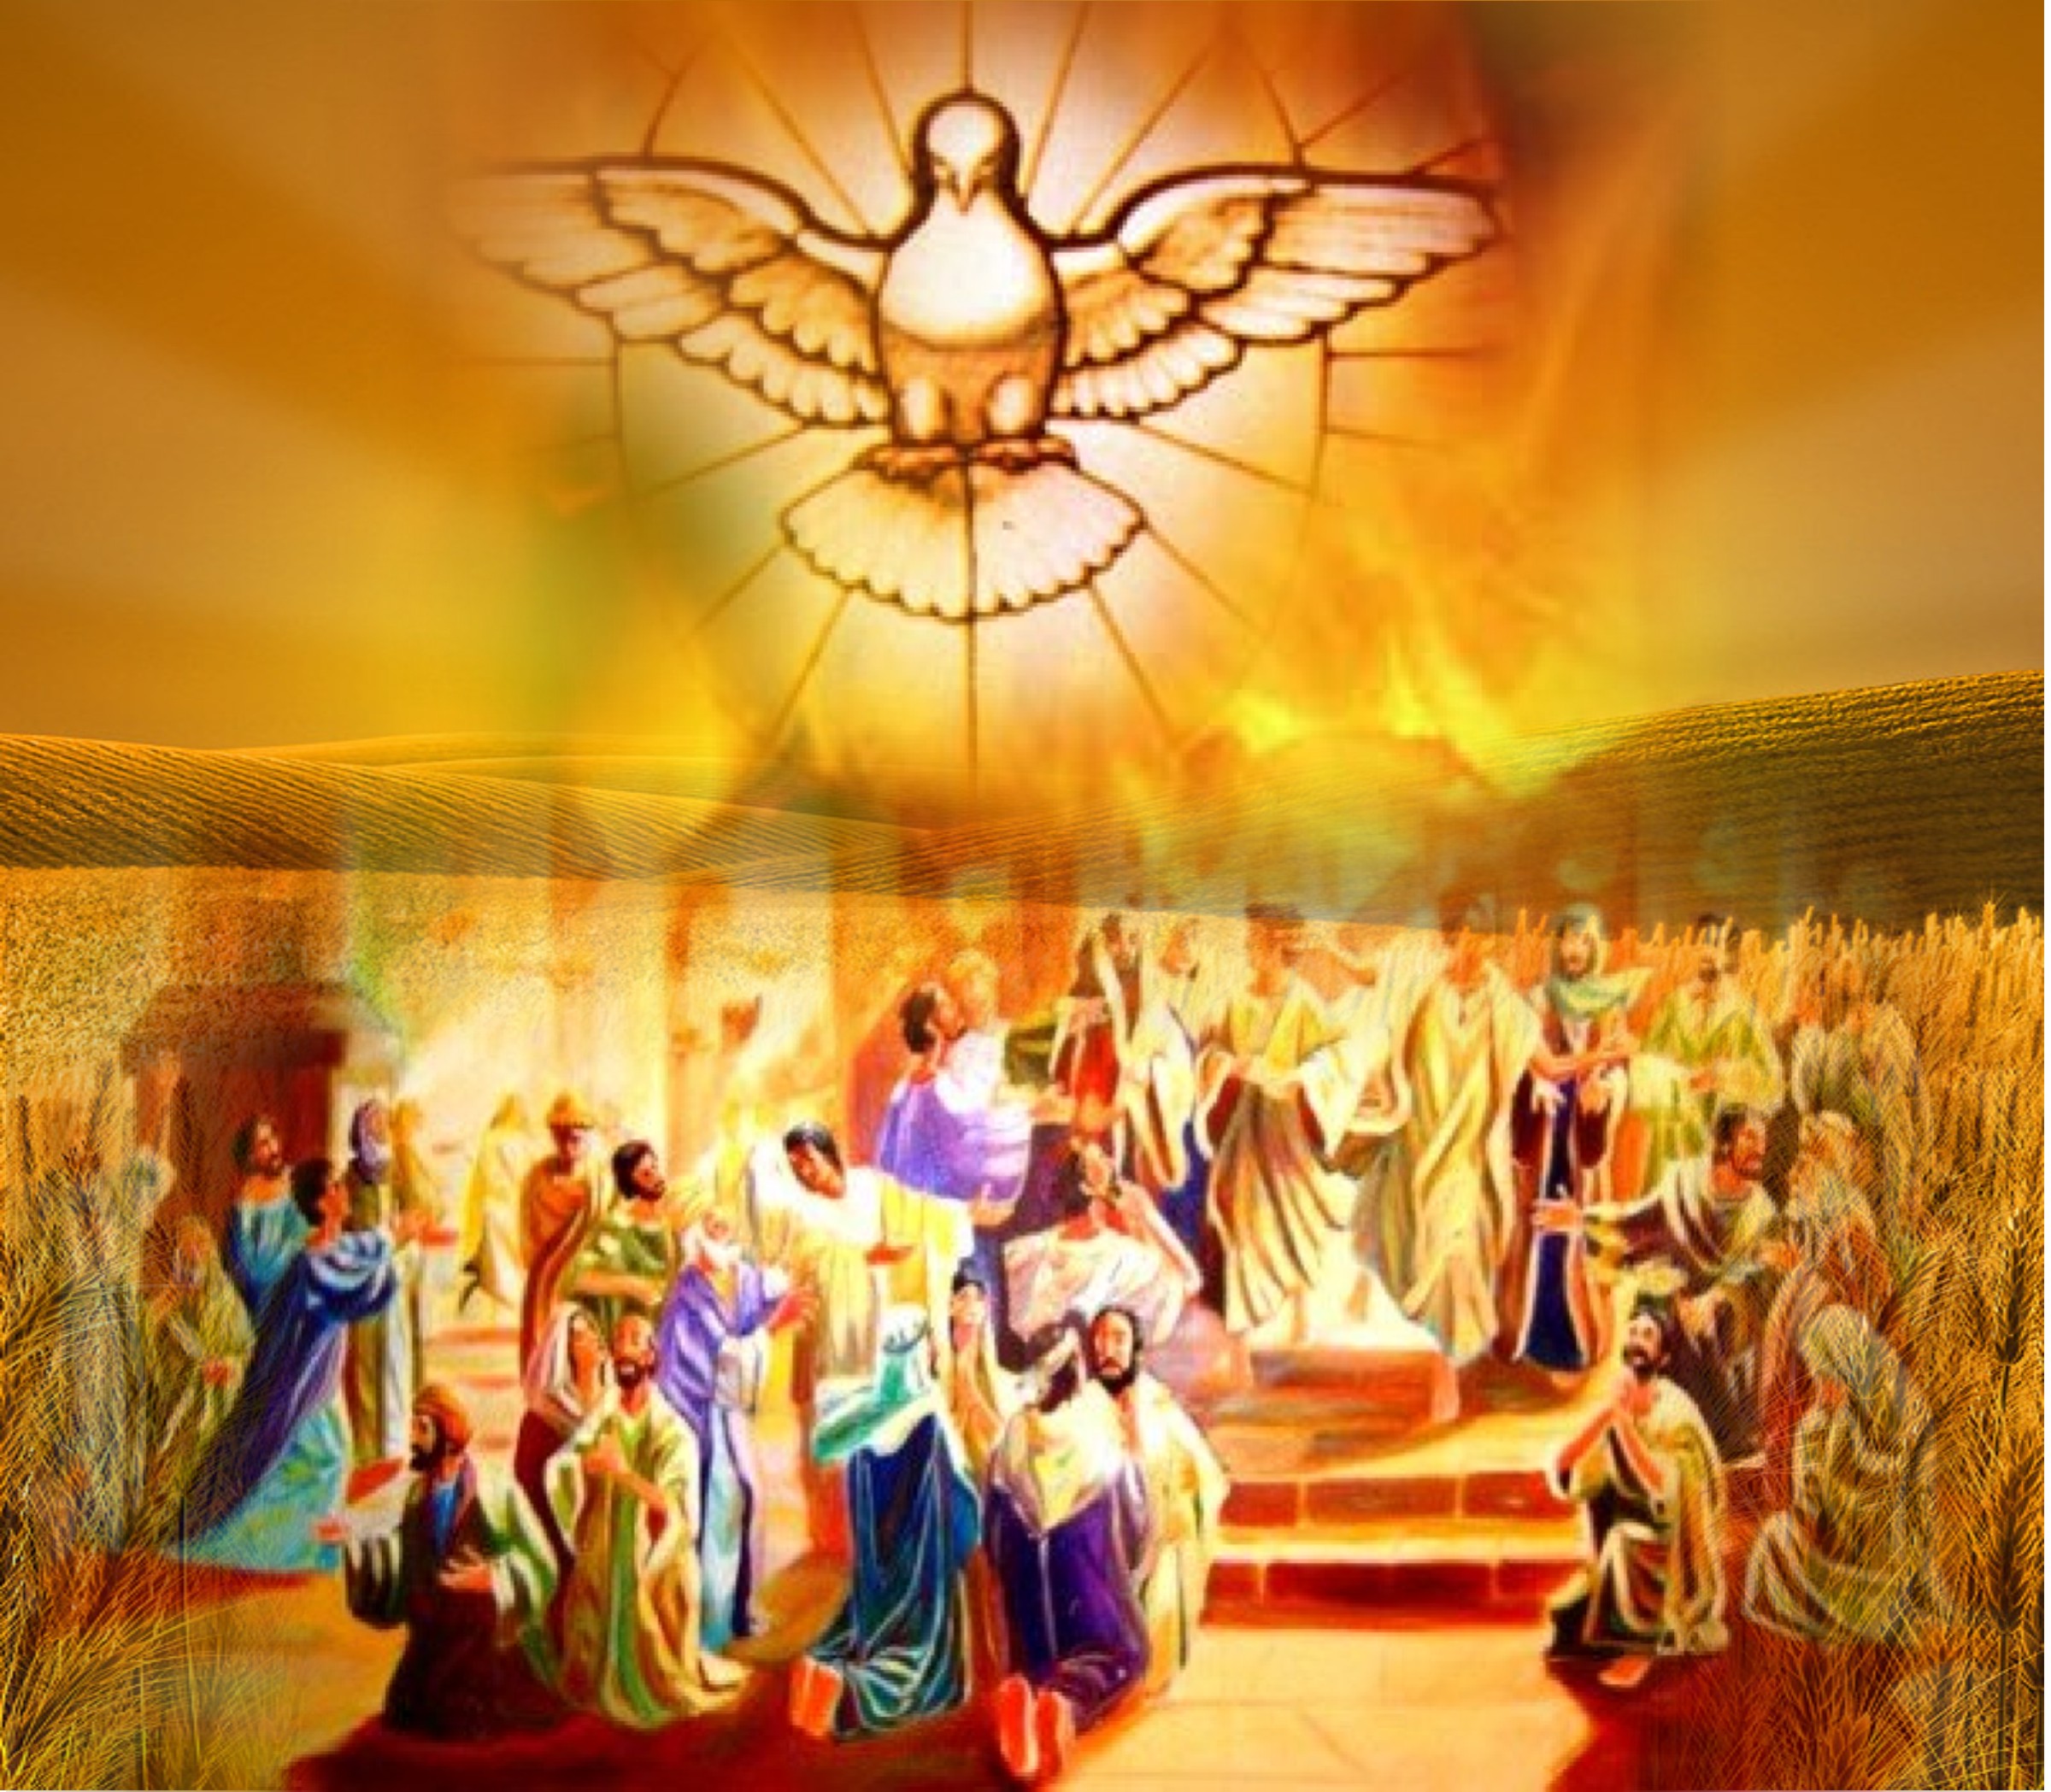 Solenidade de Pentecostes